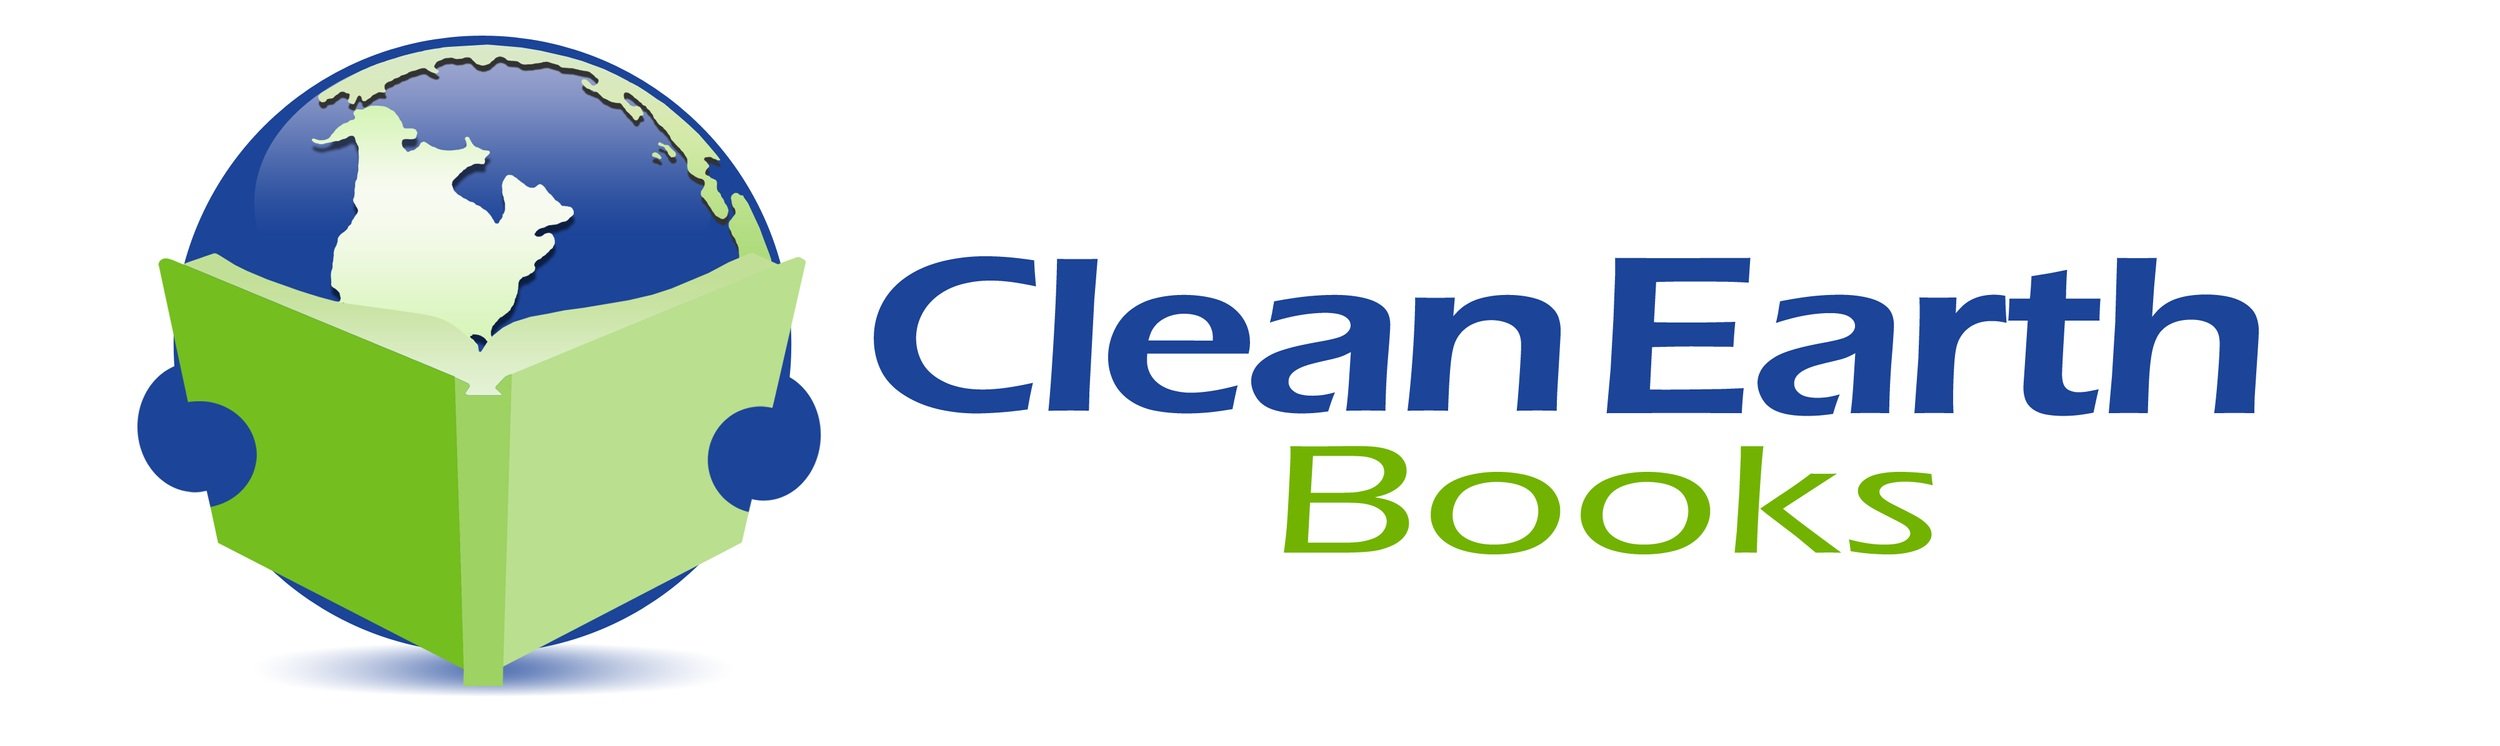 Clean Earth Books